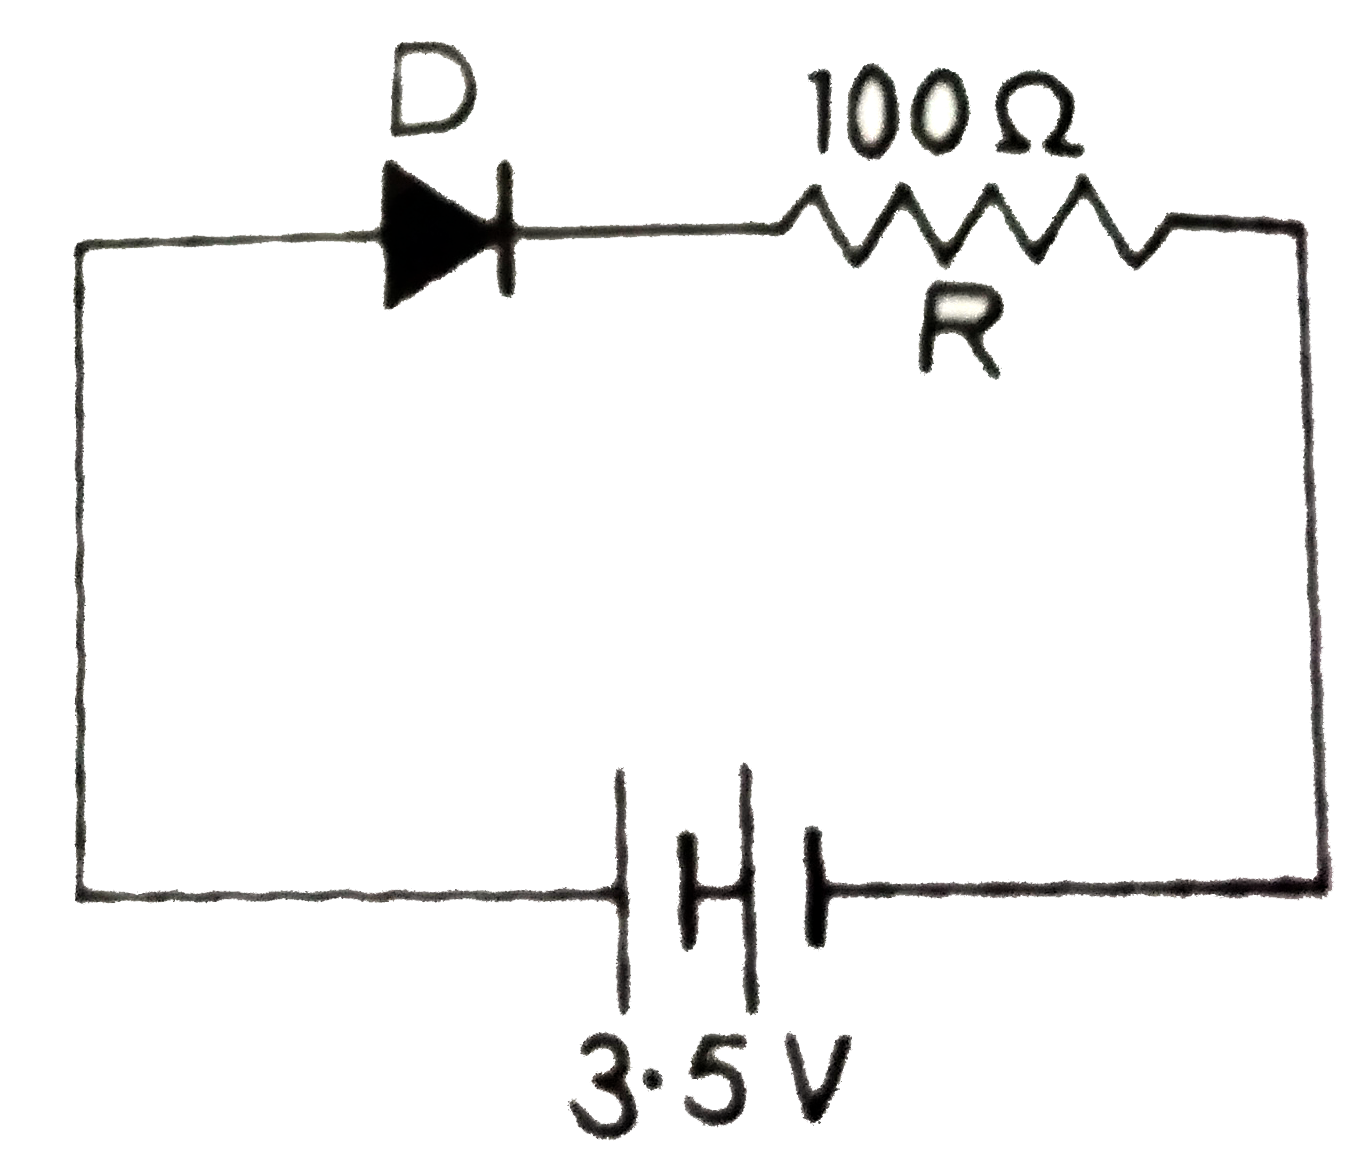 यहाँ परिपथ में, एक डायोड D को एक बाह्य प्रतिरोध, R = 100 Omega  तथा 3.5 V  विo वाo बल की बैटरी से जोड़ा गया है। यदि डायोड में ( दोनों क्षेत्रों की सन्धि के आर-पार) उत्पन्न रोधिका विभव 0.5 V है तो, परिपथ में धारा होगी :